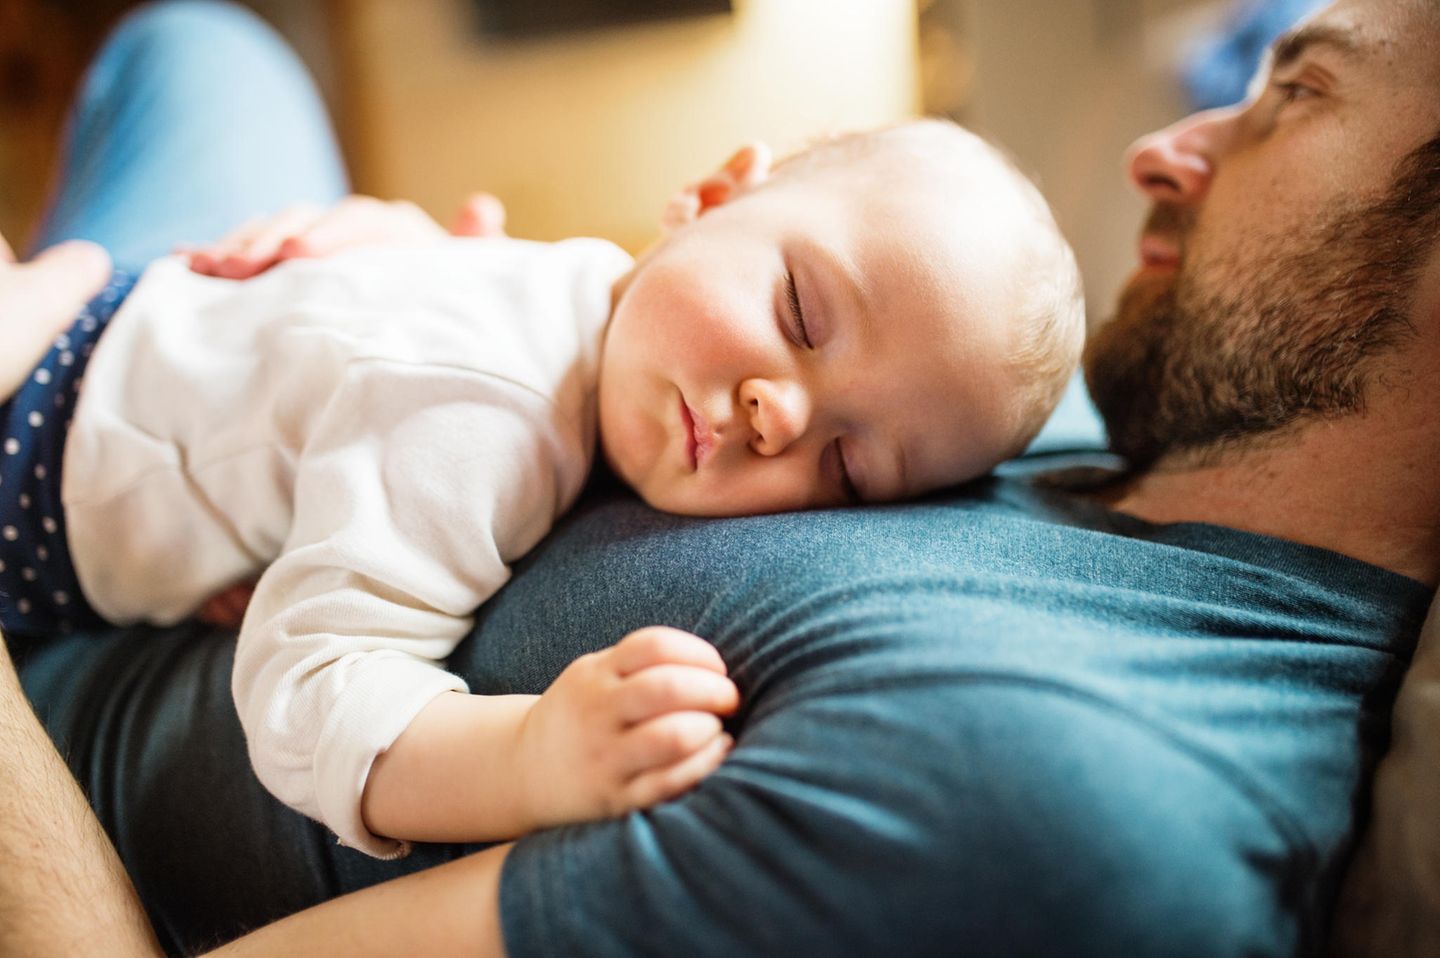 Fläschchen-Mütter: Mann mit schlafendem Baby auf dem Oberkörper